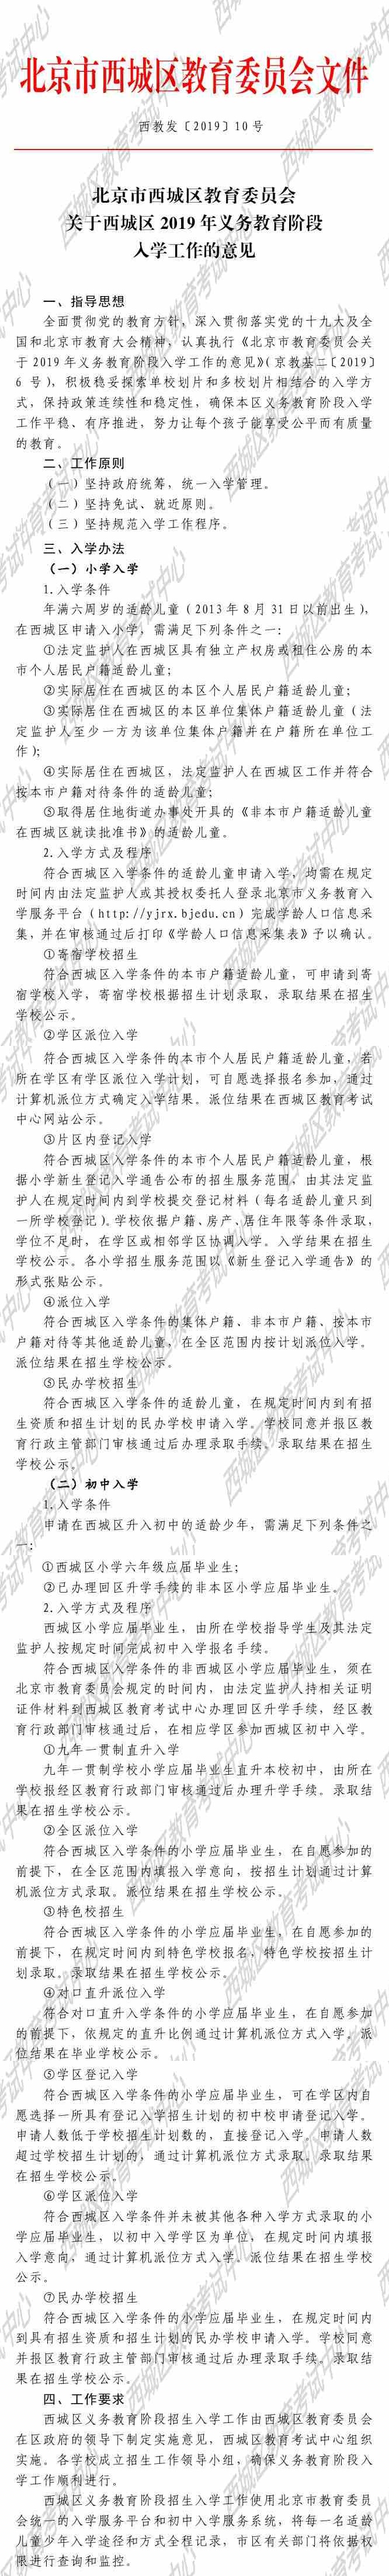 北京市西城区教育委员会关于西城区2019年义务教育阶段入学工作的意见-1.jpg